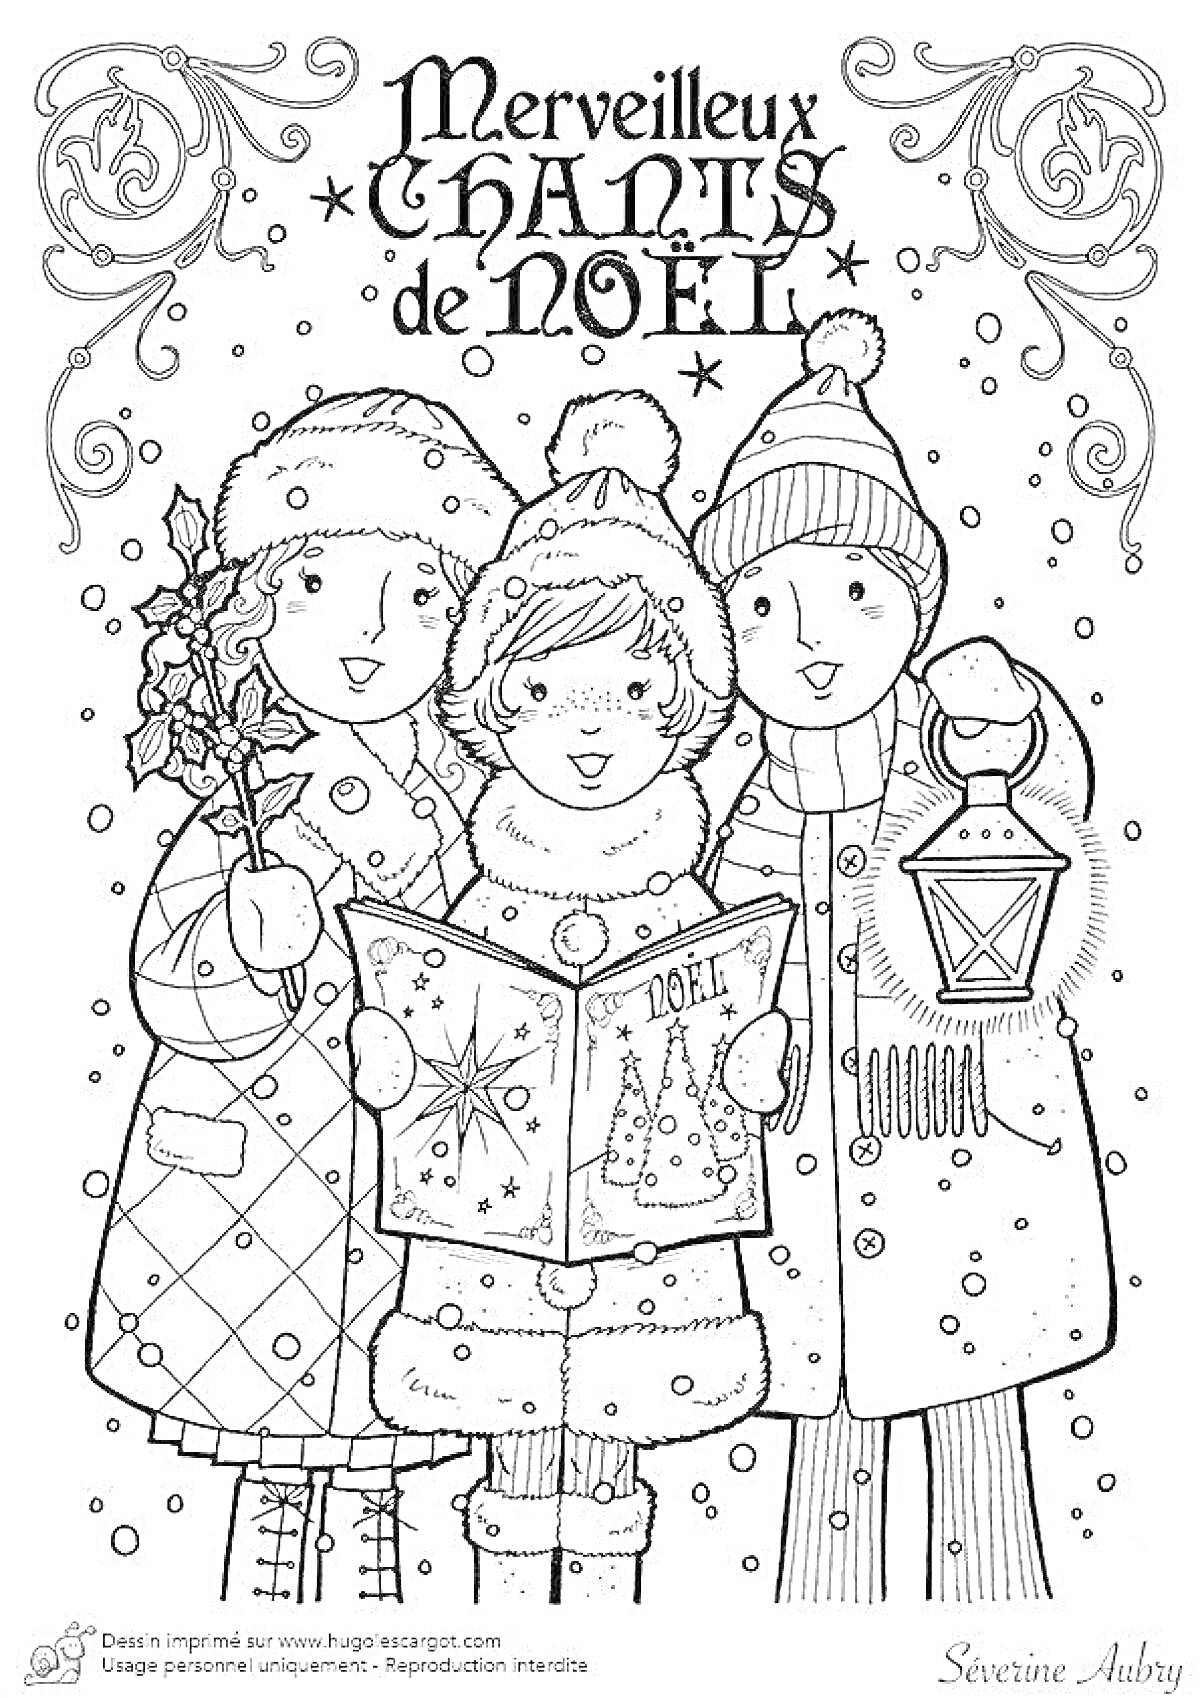 Раскраска Три поющих ребенка в зимней одежде с рождественской книгой и фонарем. Вверху на изображении текст 